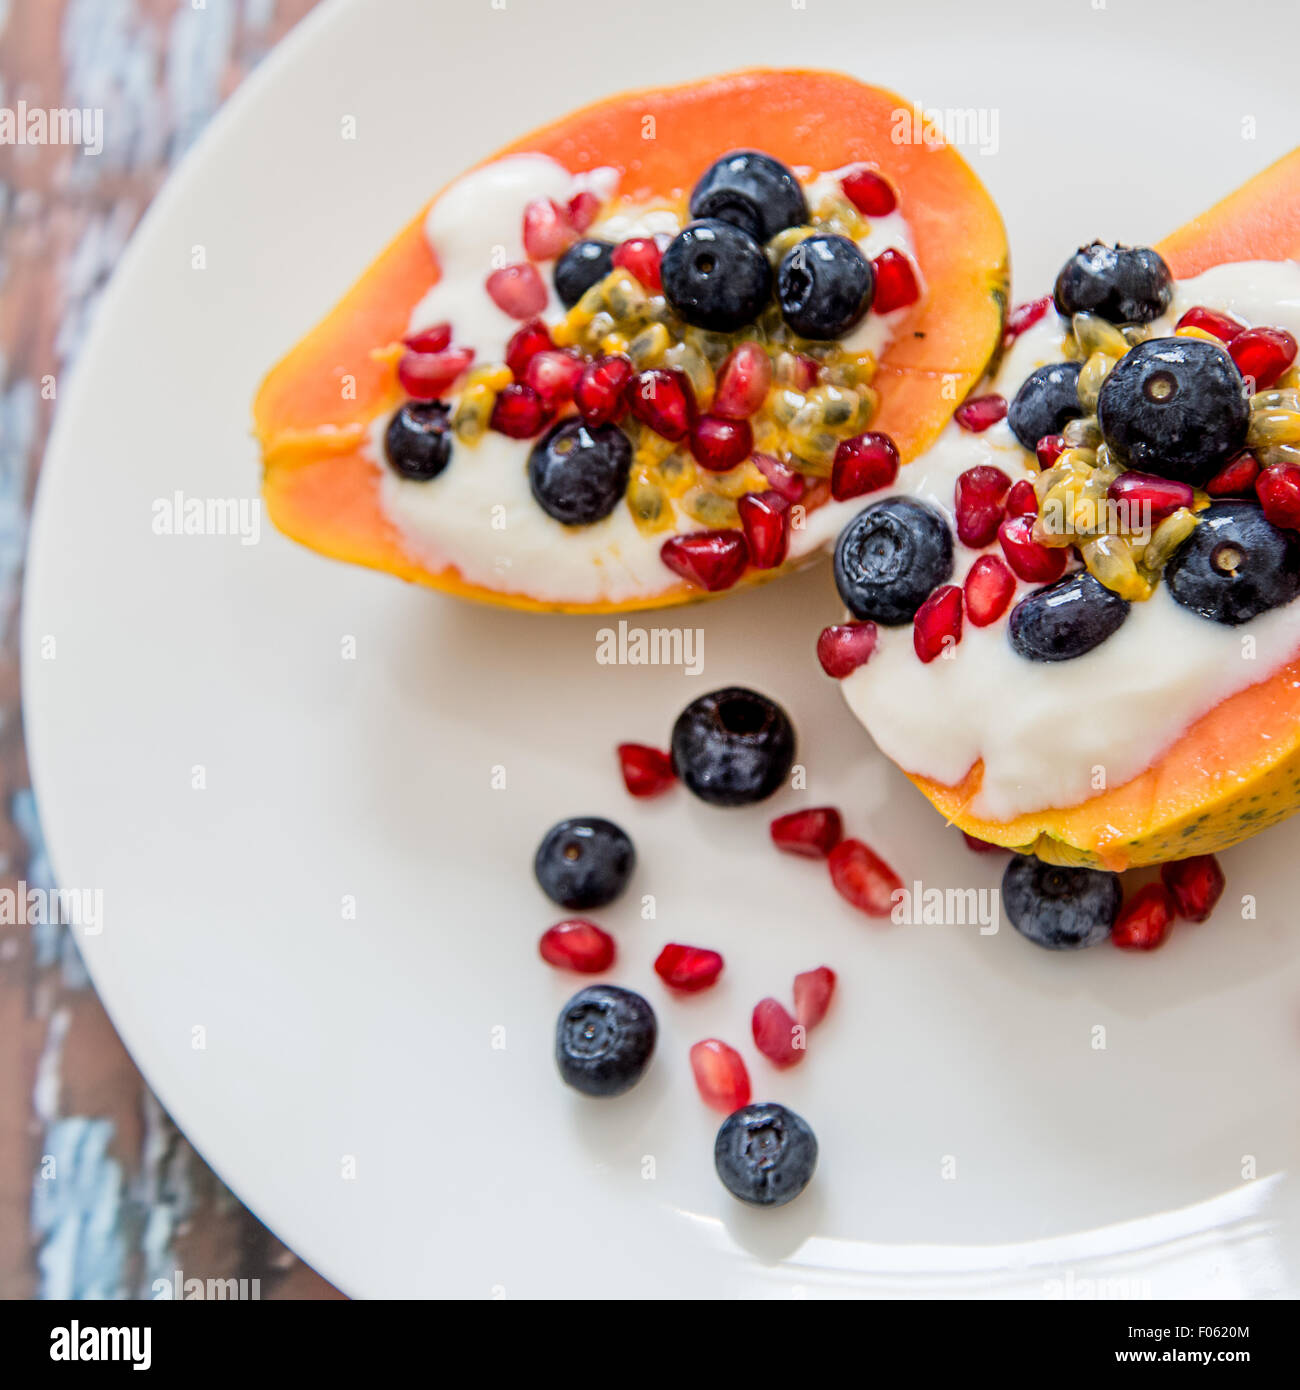 La papaia con soia naturale yogurt e frutti di bosco freschi, leggera e sana colazione, papaia, mirtilli, frutto della passione, melograno Foto Stock